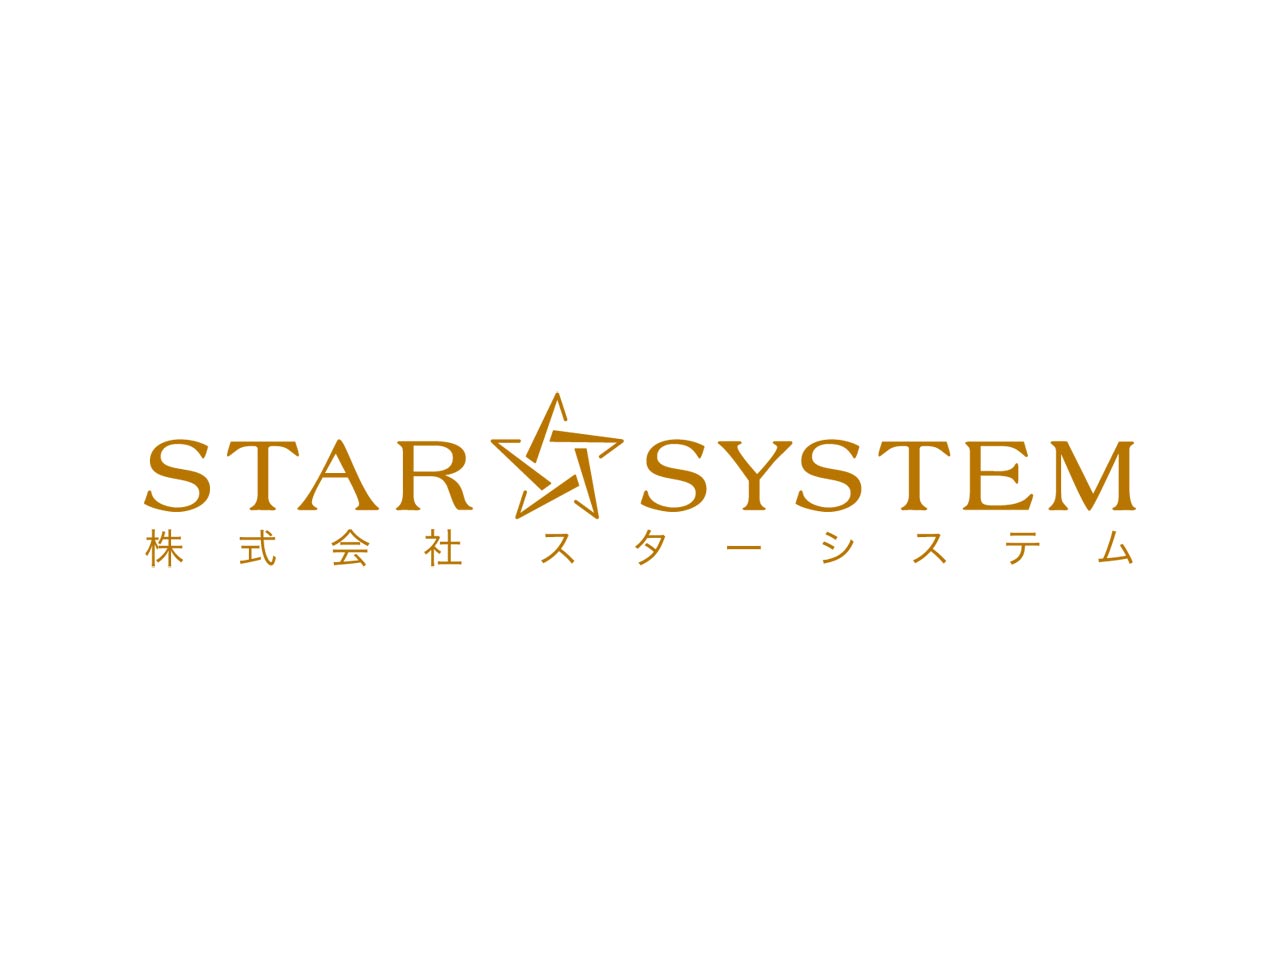 愛知県名古屋市に本社を構えるシステム開発会社。